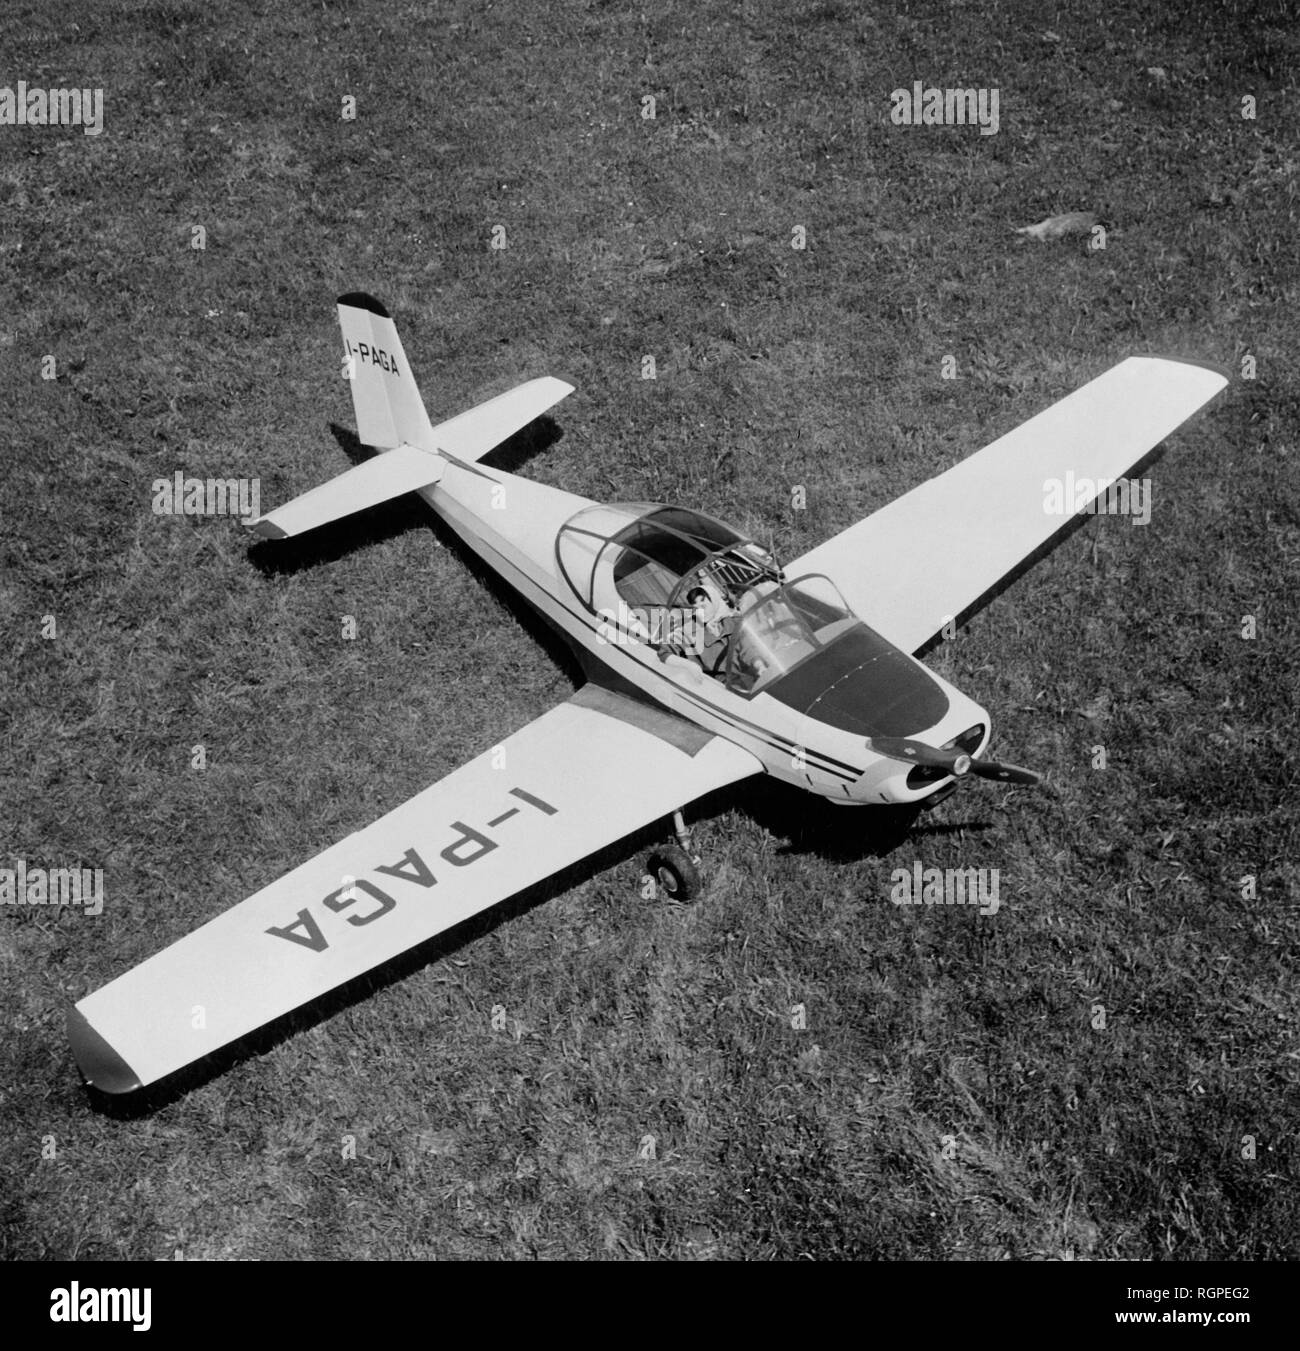 aviamilano P 19 scricciolo, 1962 Stock Photo